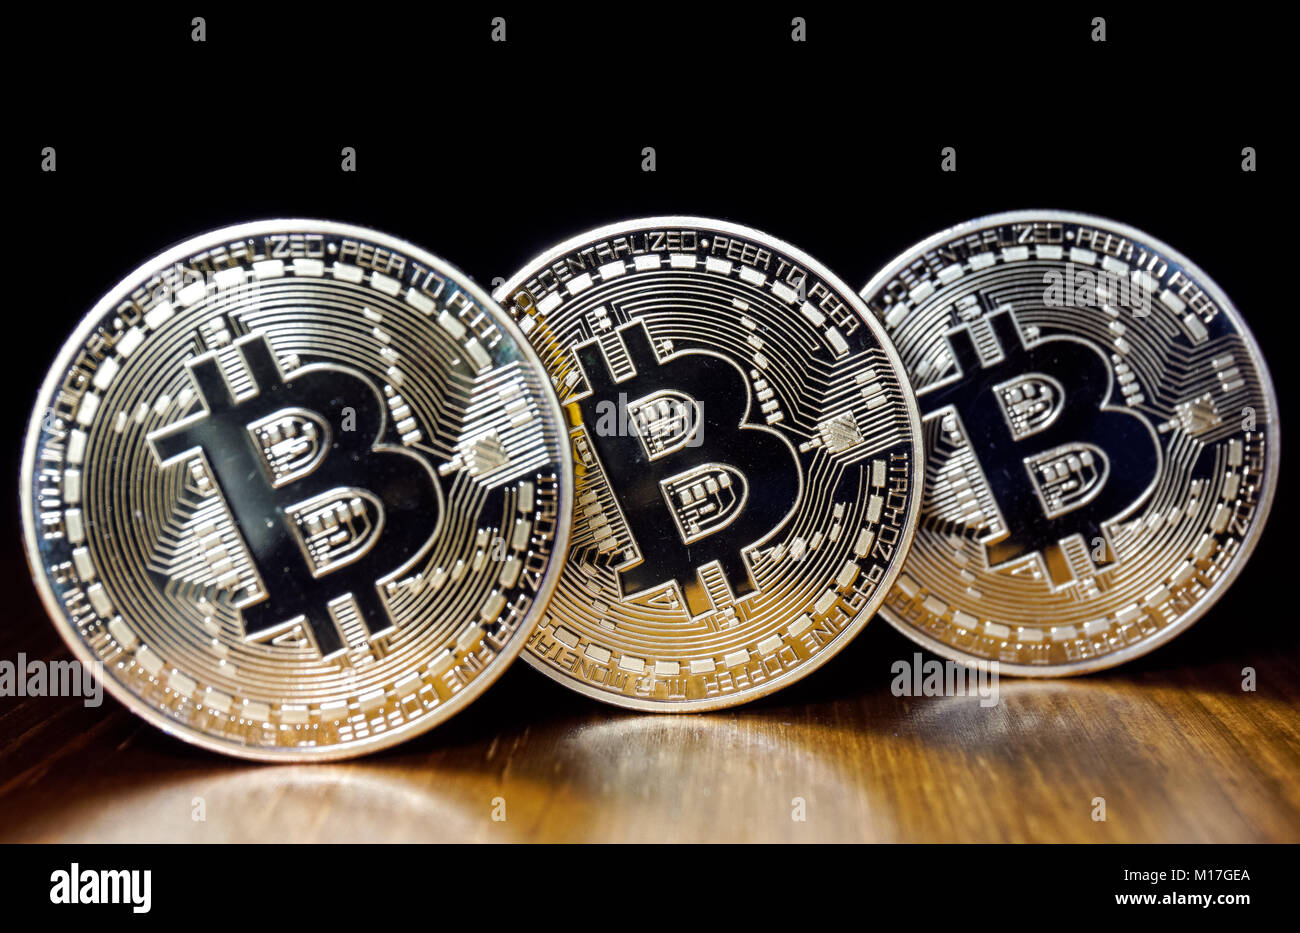 Bitcoin cryptocurrency monete su sfondo nero Foto Stock